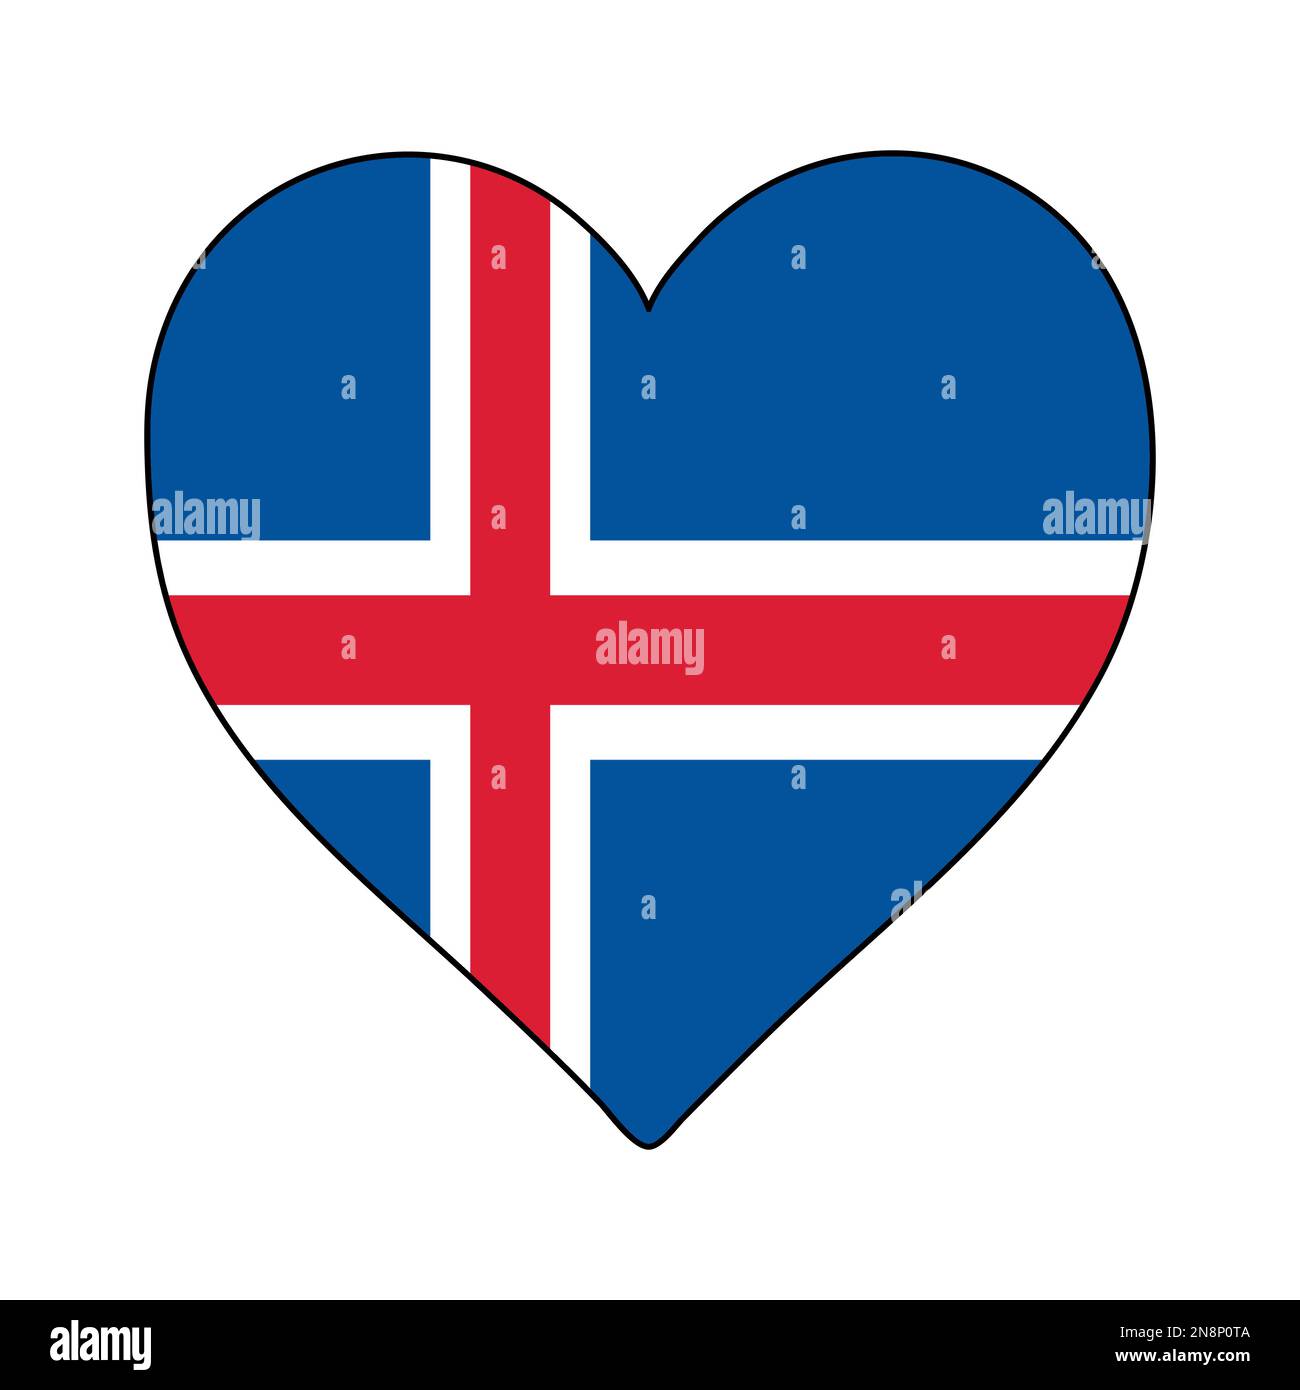 Drapeau en forme de coeur d'Islande. Amour Islande. Visitez l'Islande. Europe du Nord. Europe. Union européenne. Conception graphique d'illustration vectorielle. Illustration de Vecteur